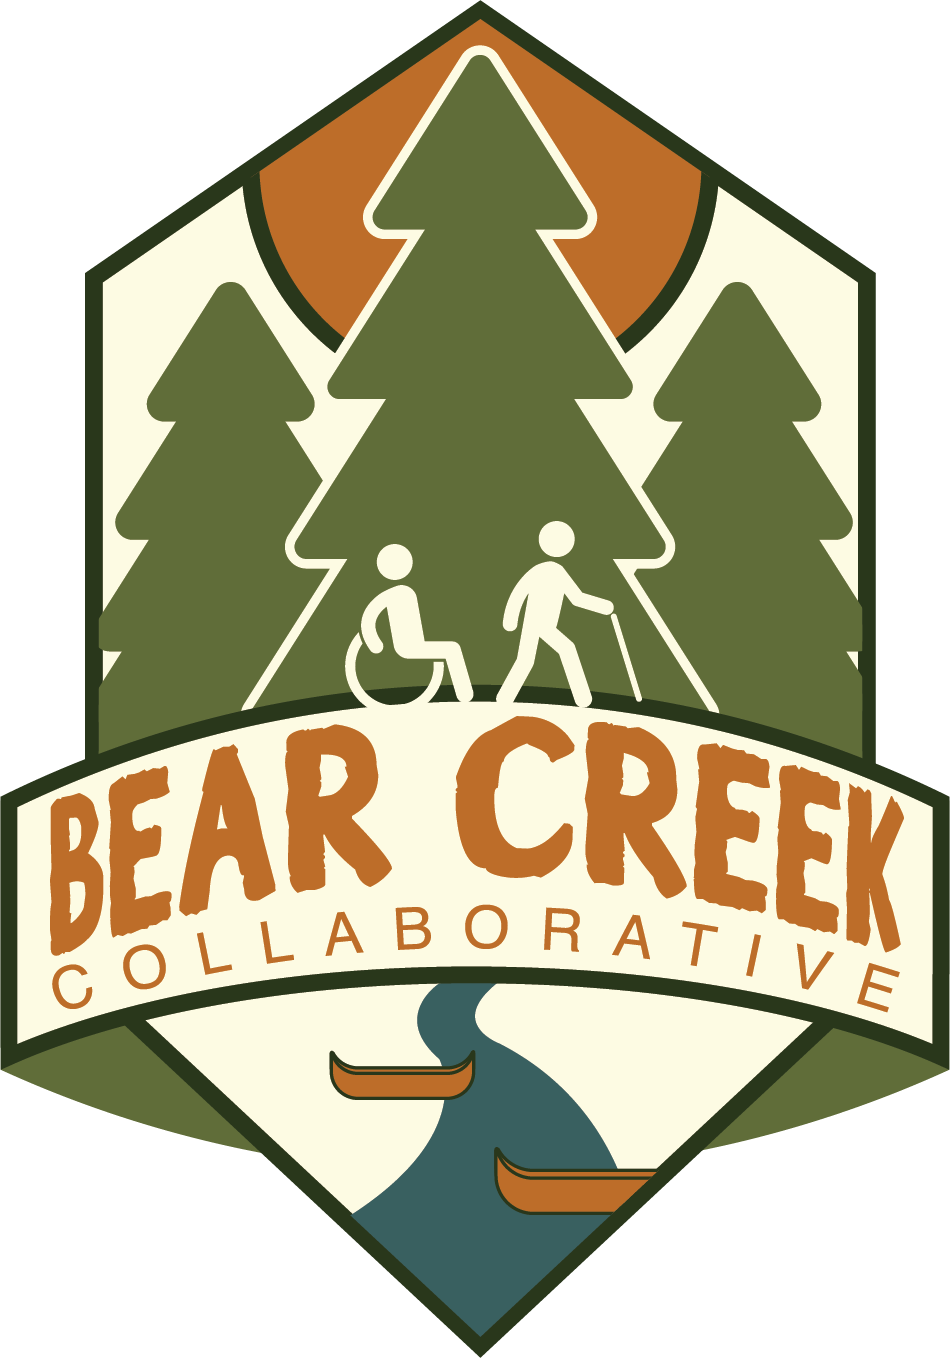 Bear Creek Collaborative